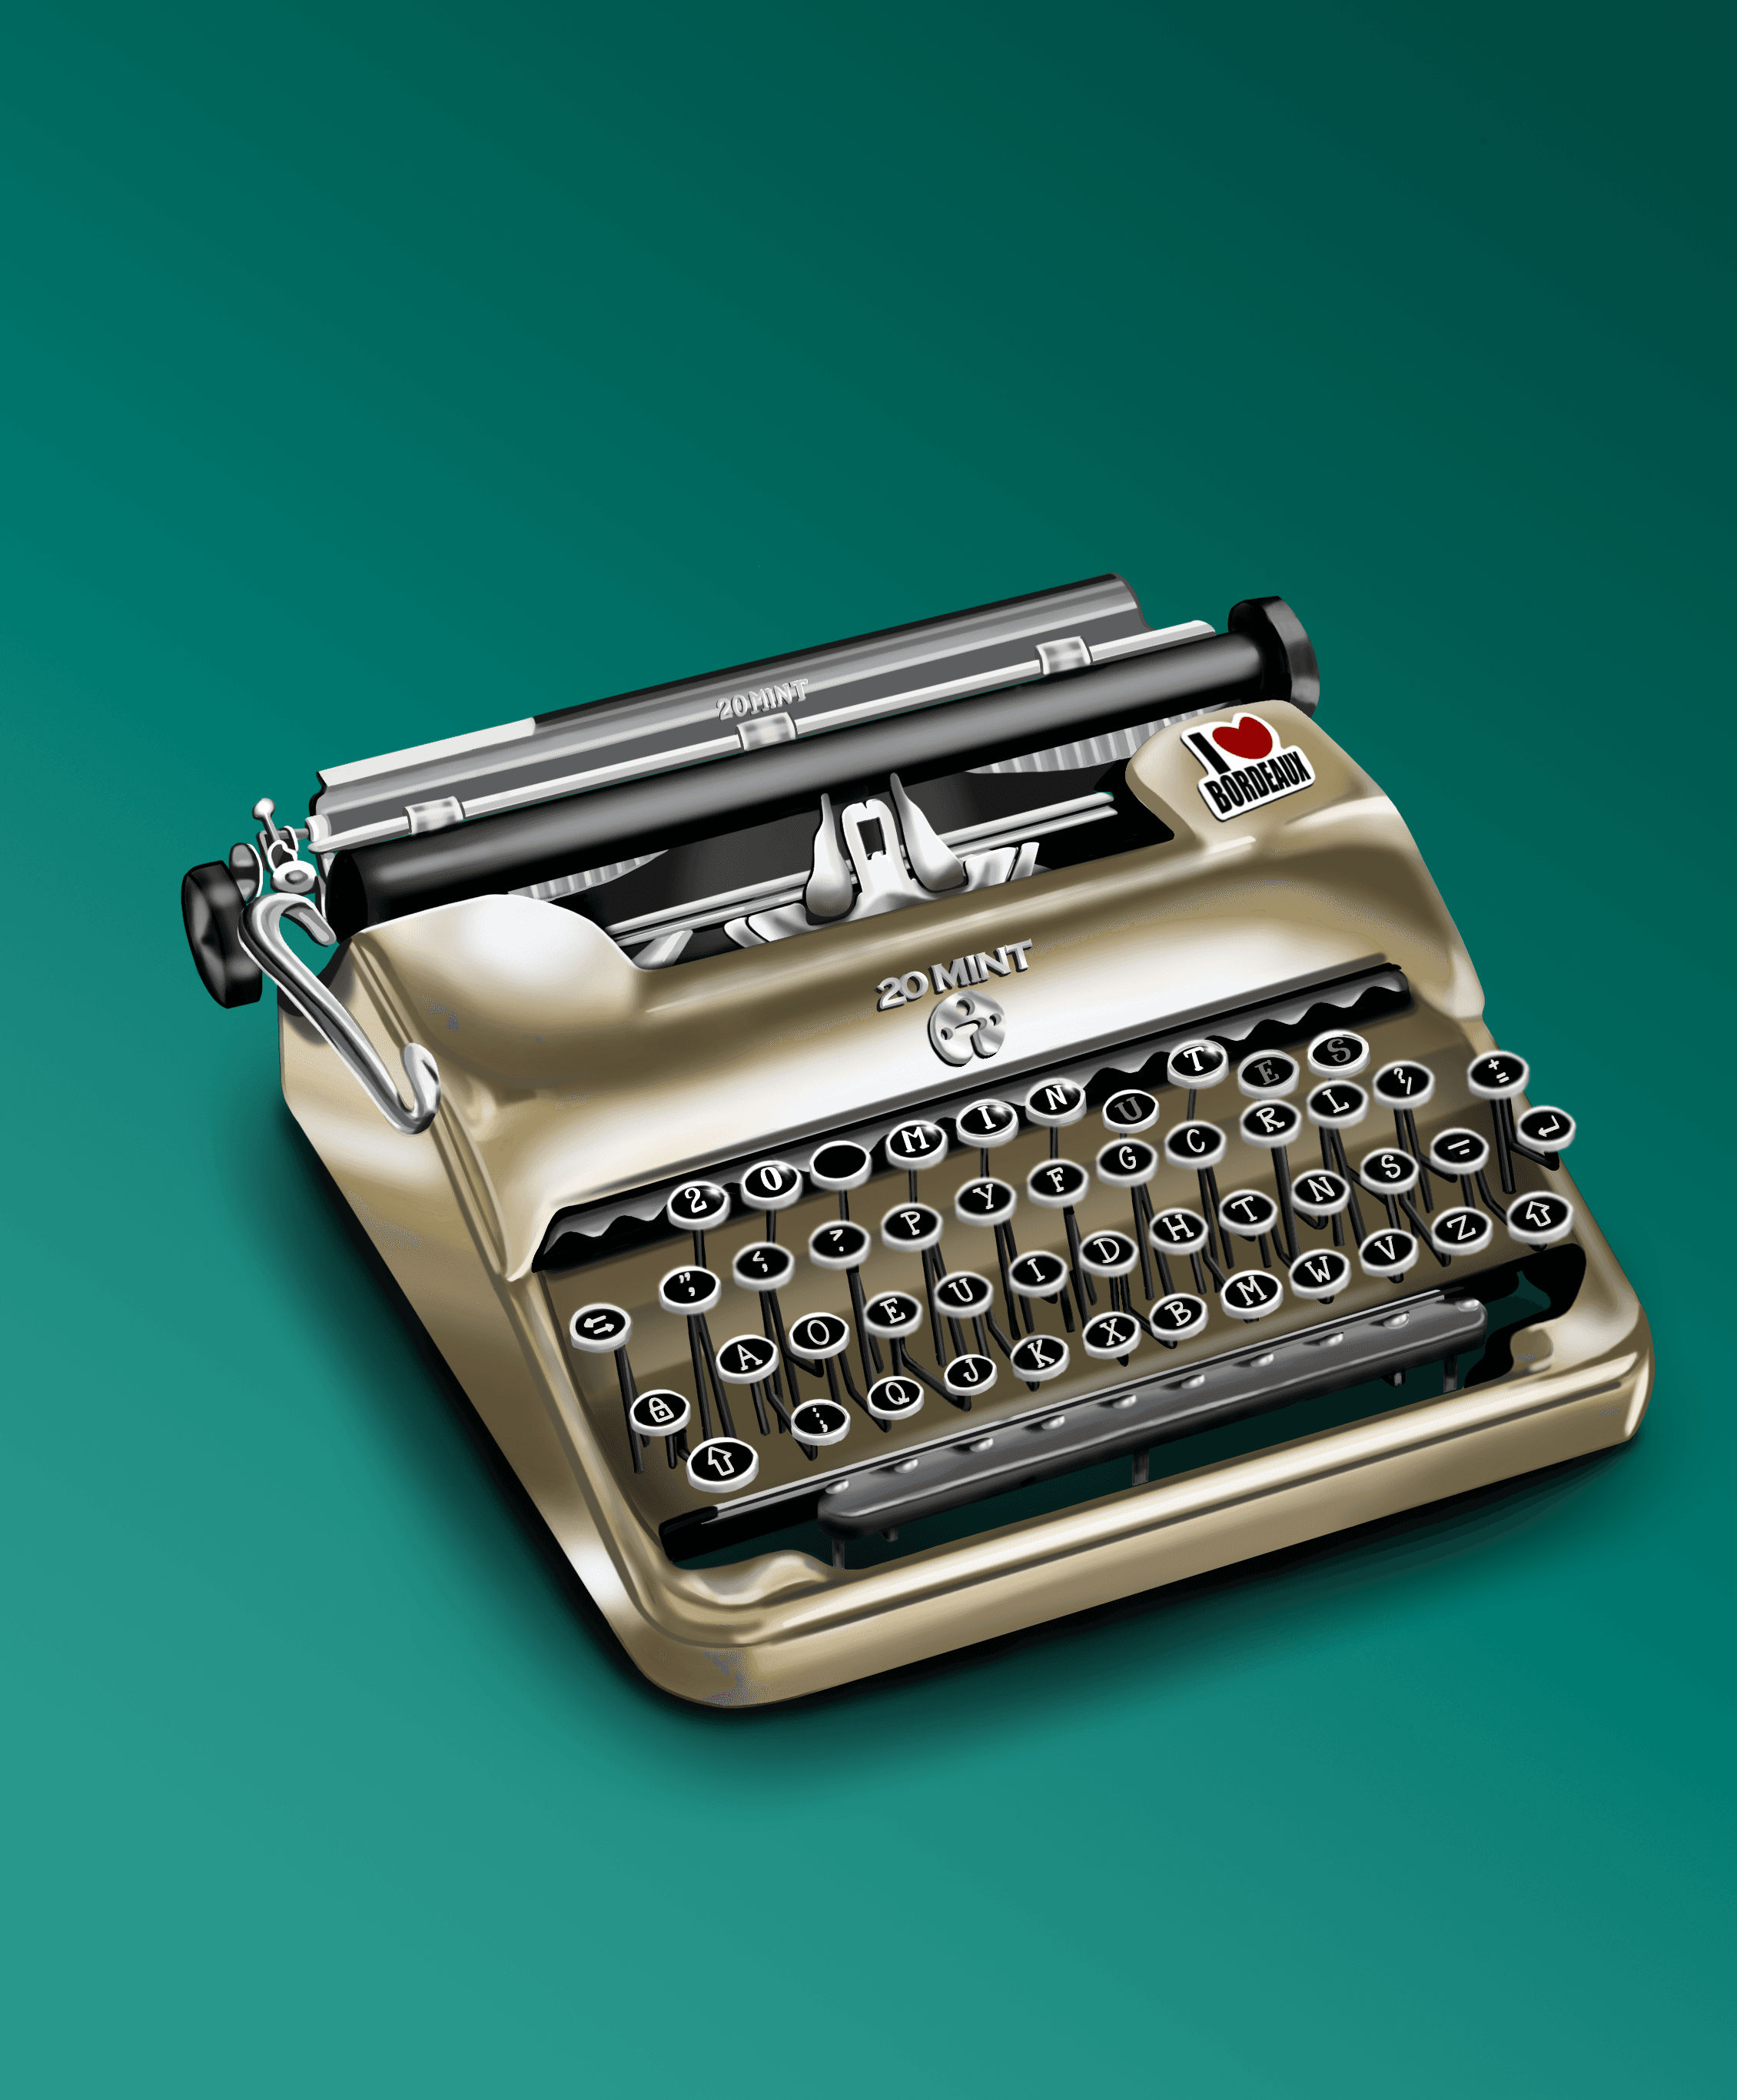 20 Mint Typewriter #544